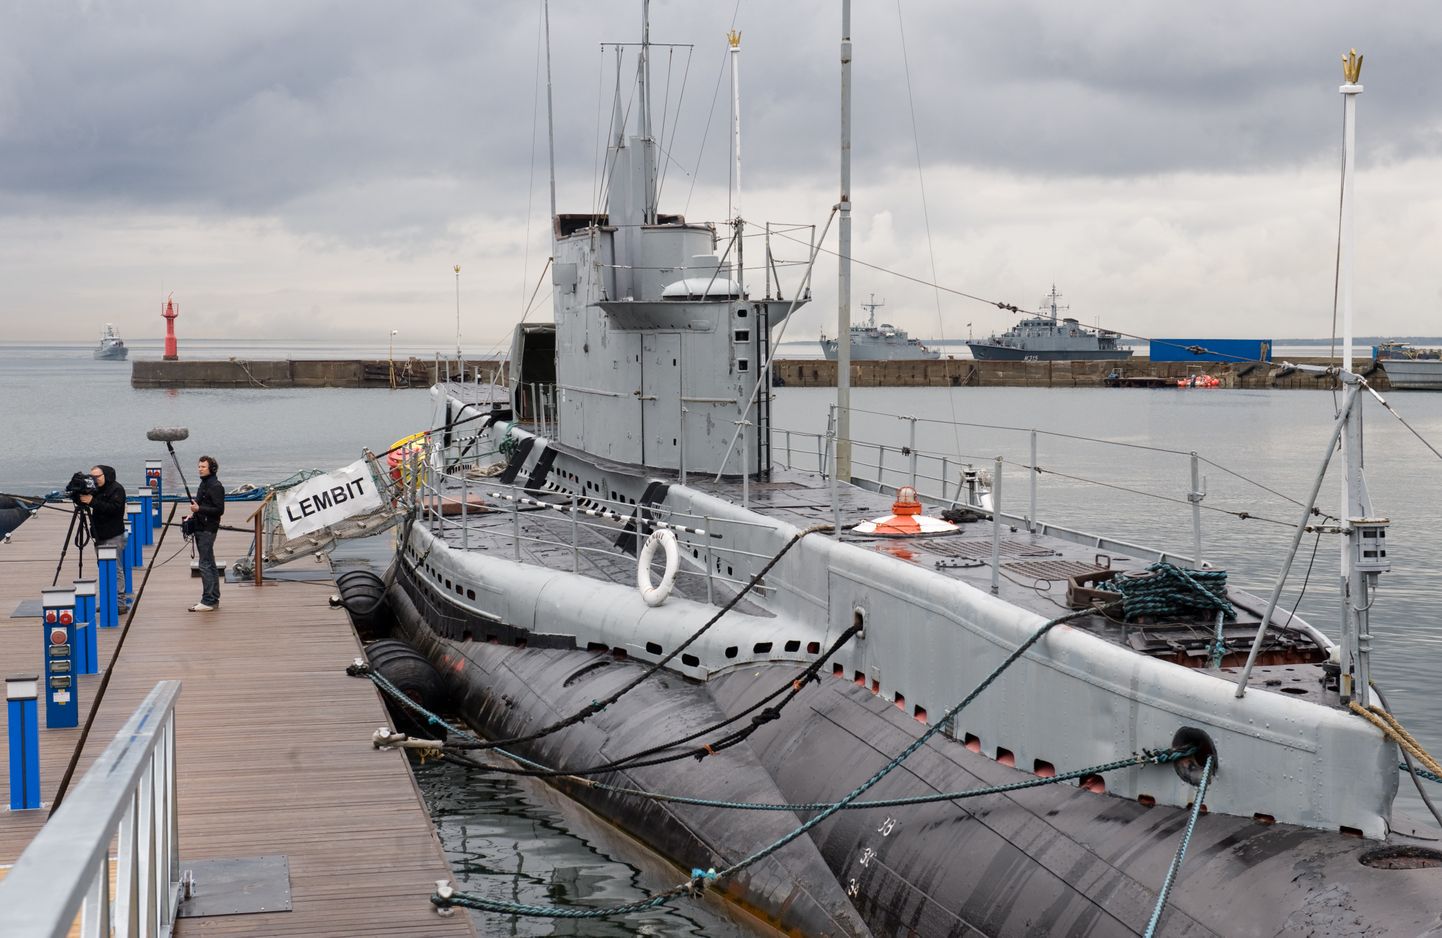 Подводная лодка Lembit, которая является одним из главных экспонатов Морского музея Эстонии, еще на воде, май 2011 года.